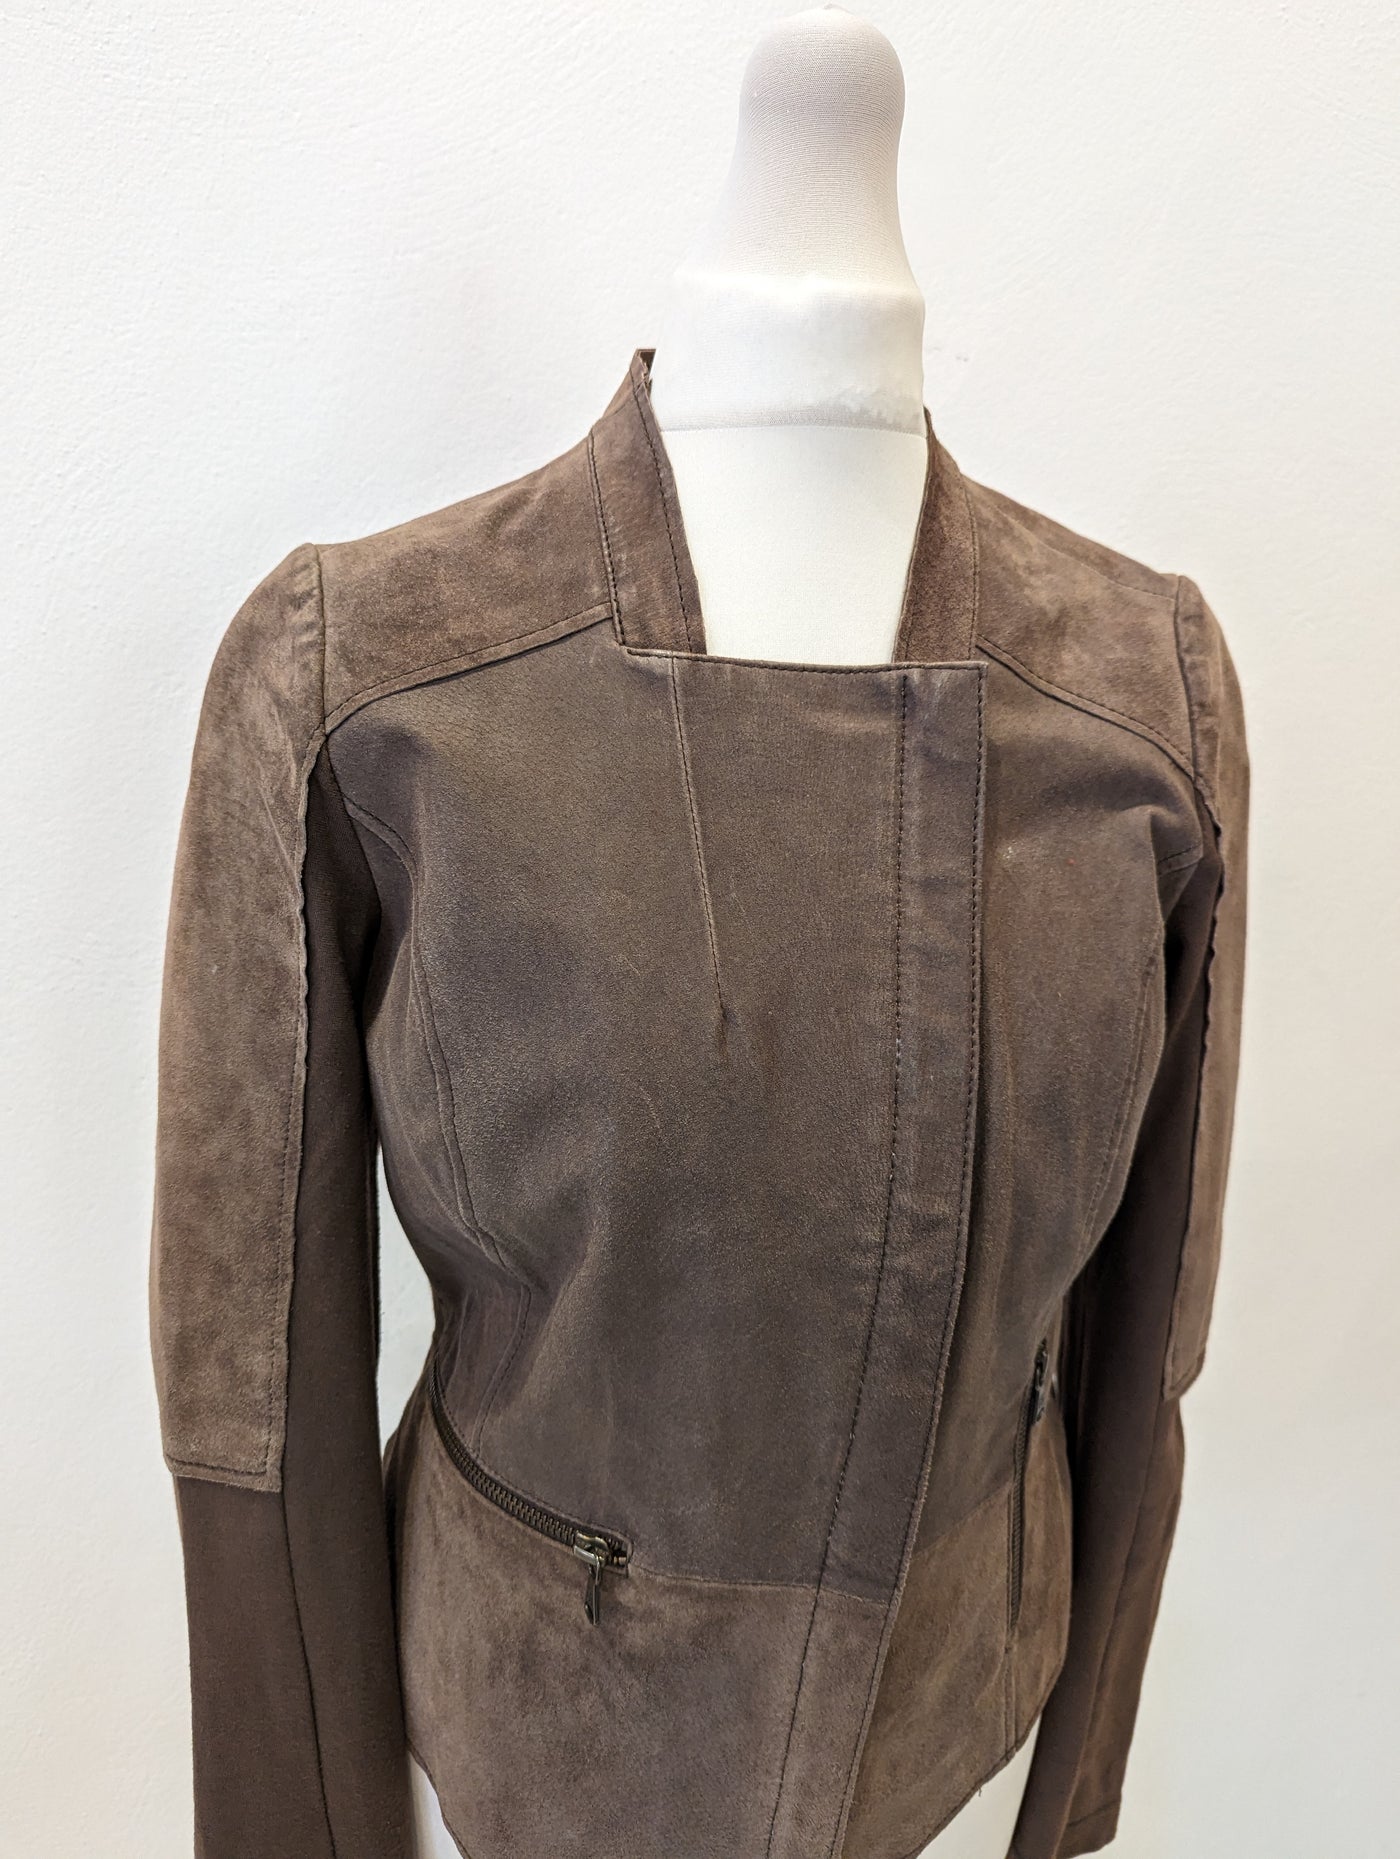 Sandwich leather/ jersey jacket 6/8